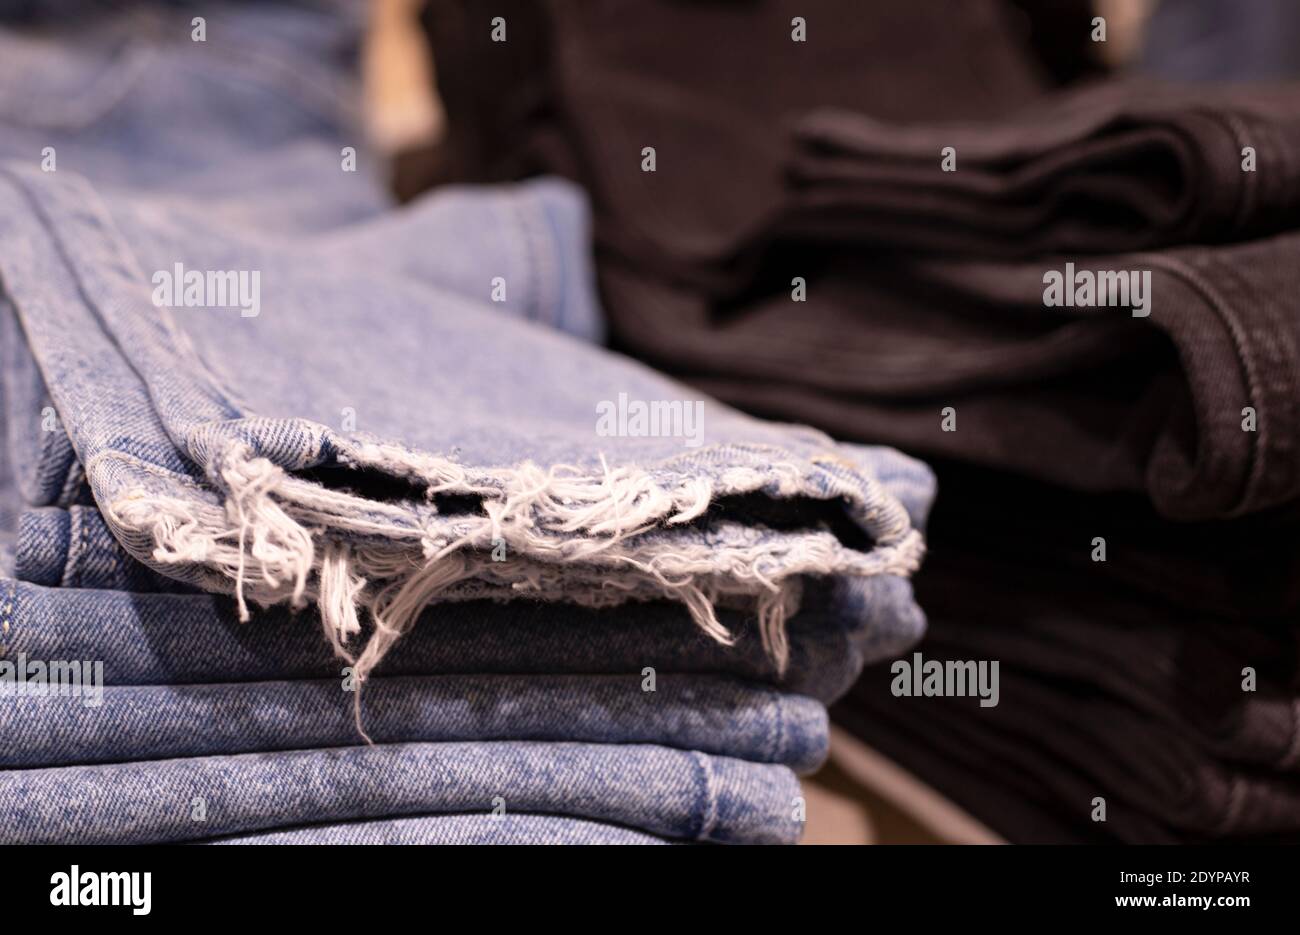 Abbigliamento donna - collezione autunno inverno. Pantaloni denim in negozio. Il concetto di consumo cosciente e riciclaggio delle cose. Foto Stock